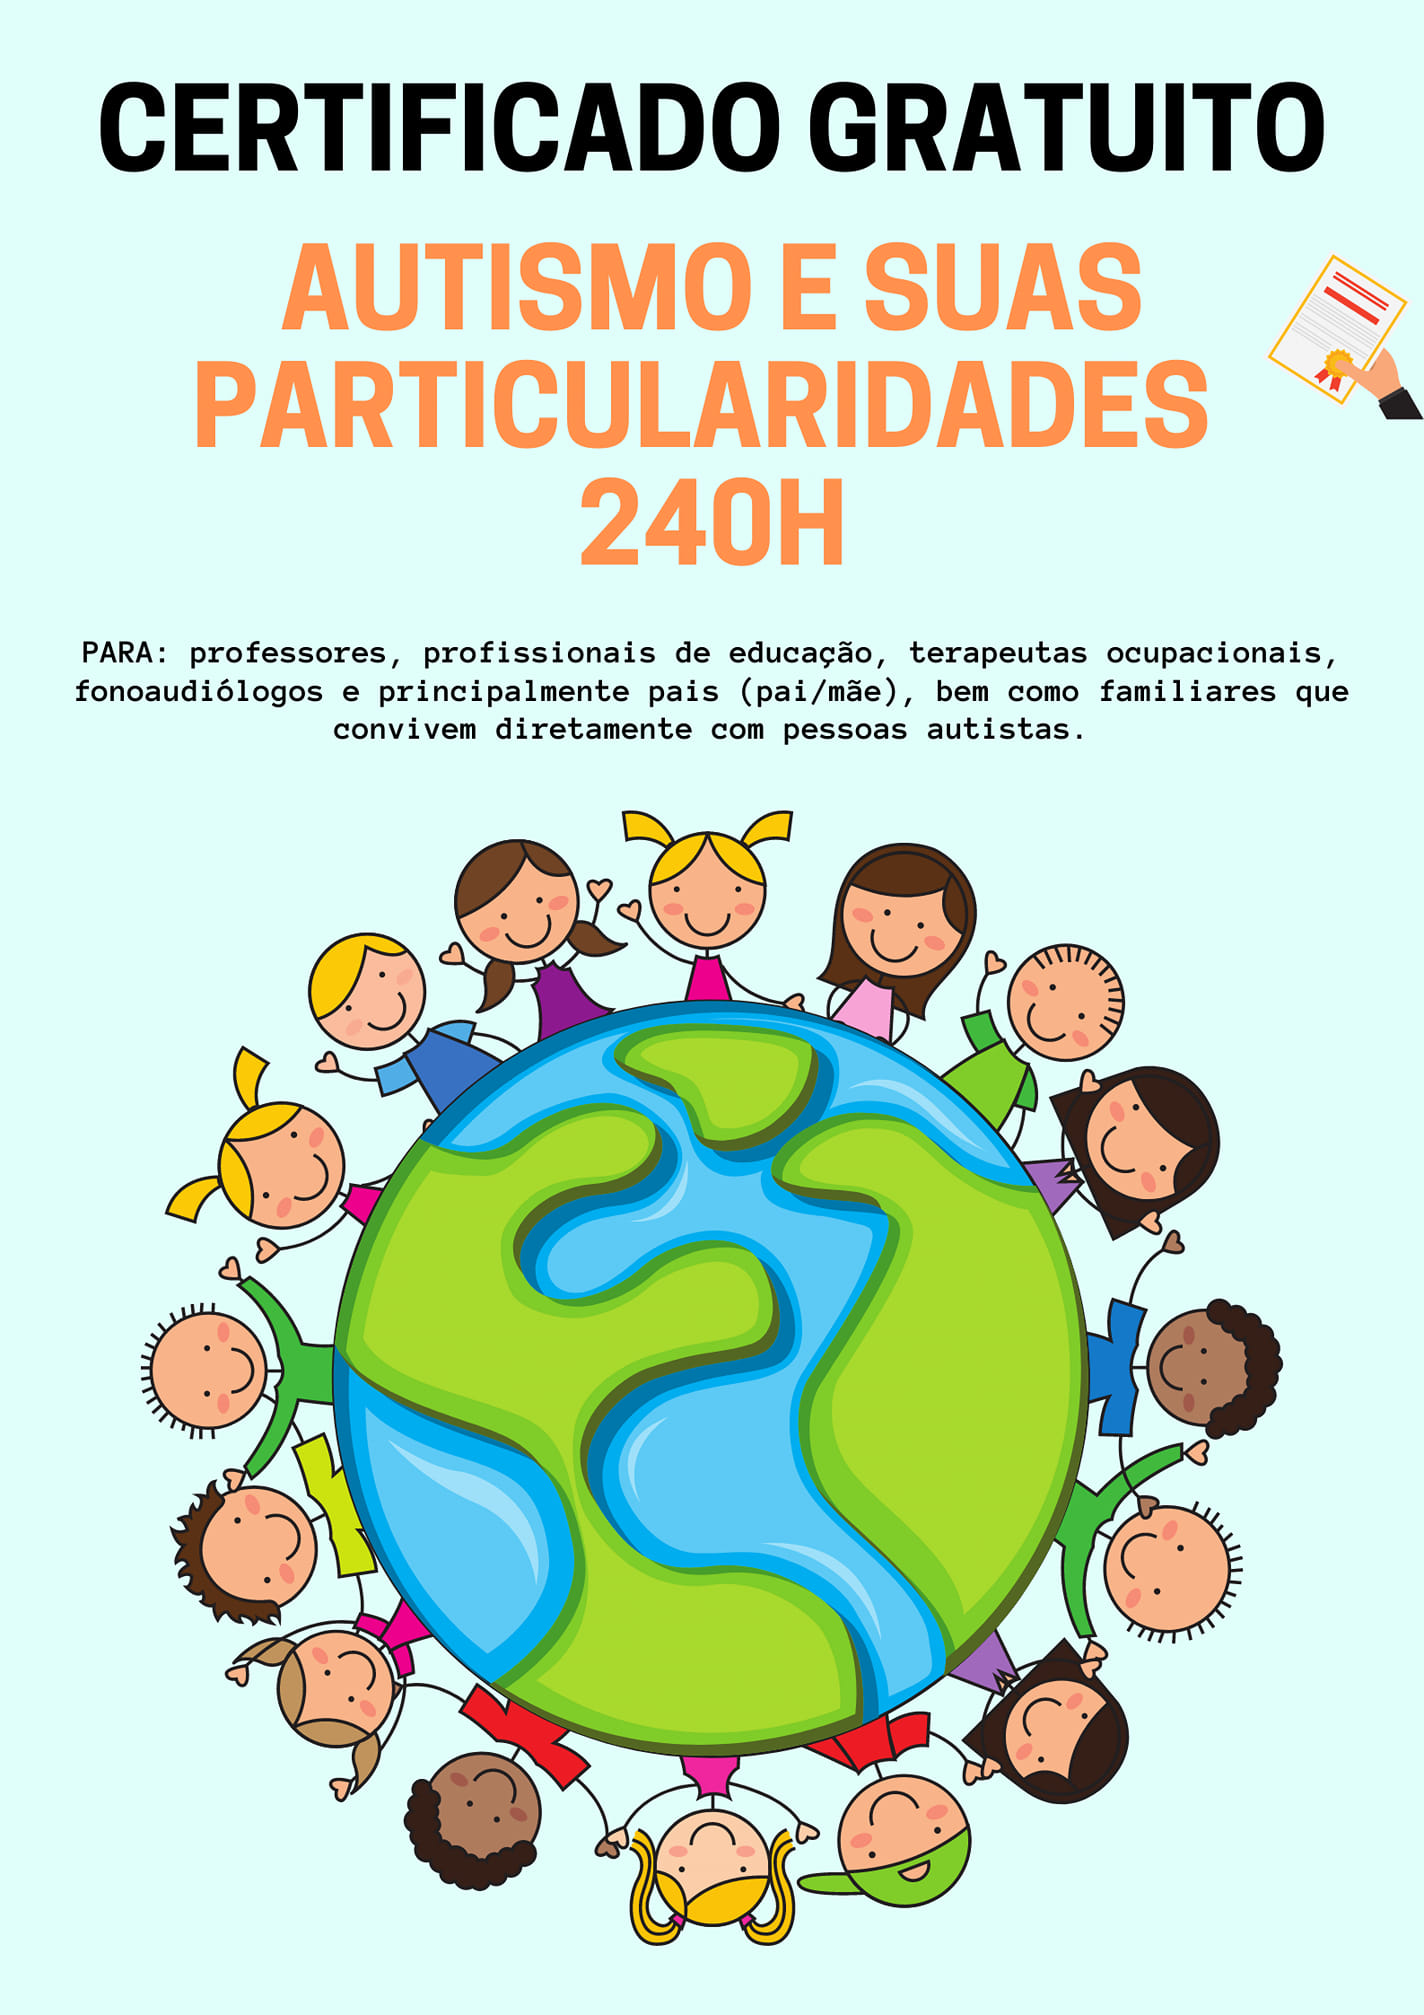 Ludo Educativo atinge 16 milhões de acessos no Brasil e mais 181 países -  Centro de Desenvolvimento de Materiais Funcionais CEPID-FAPESP